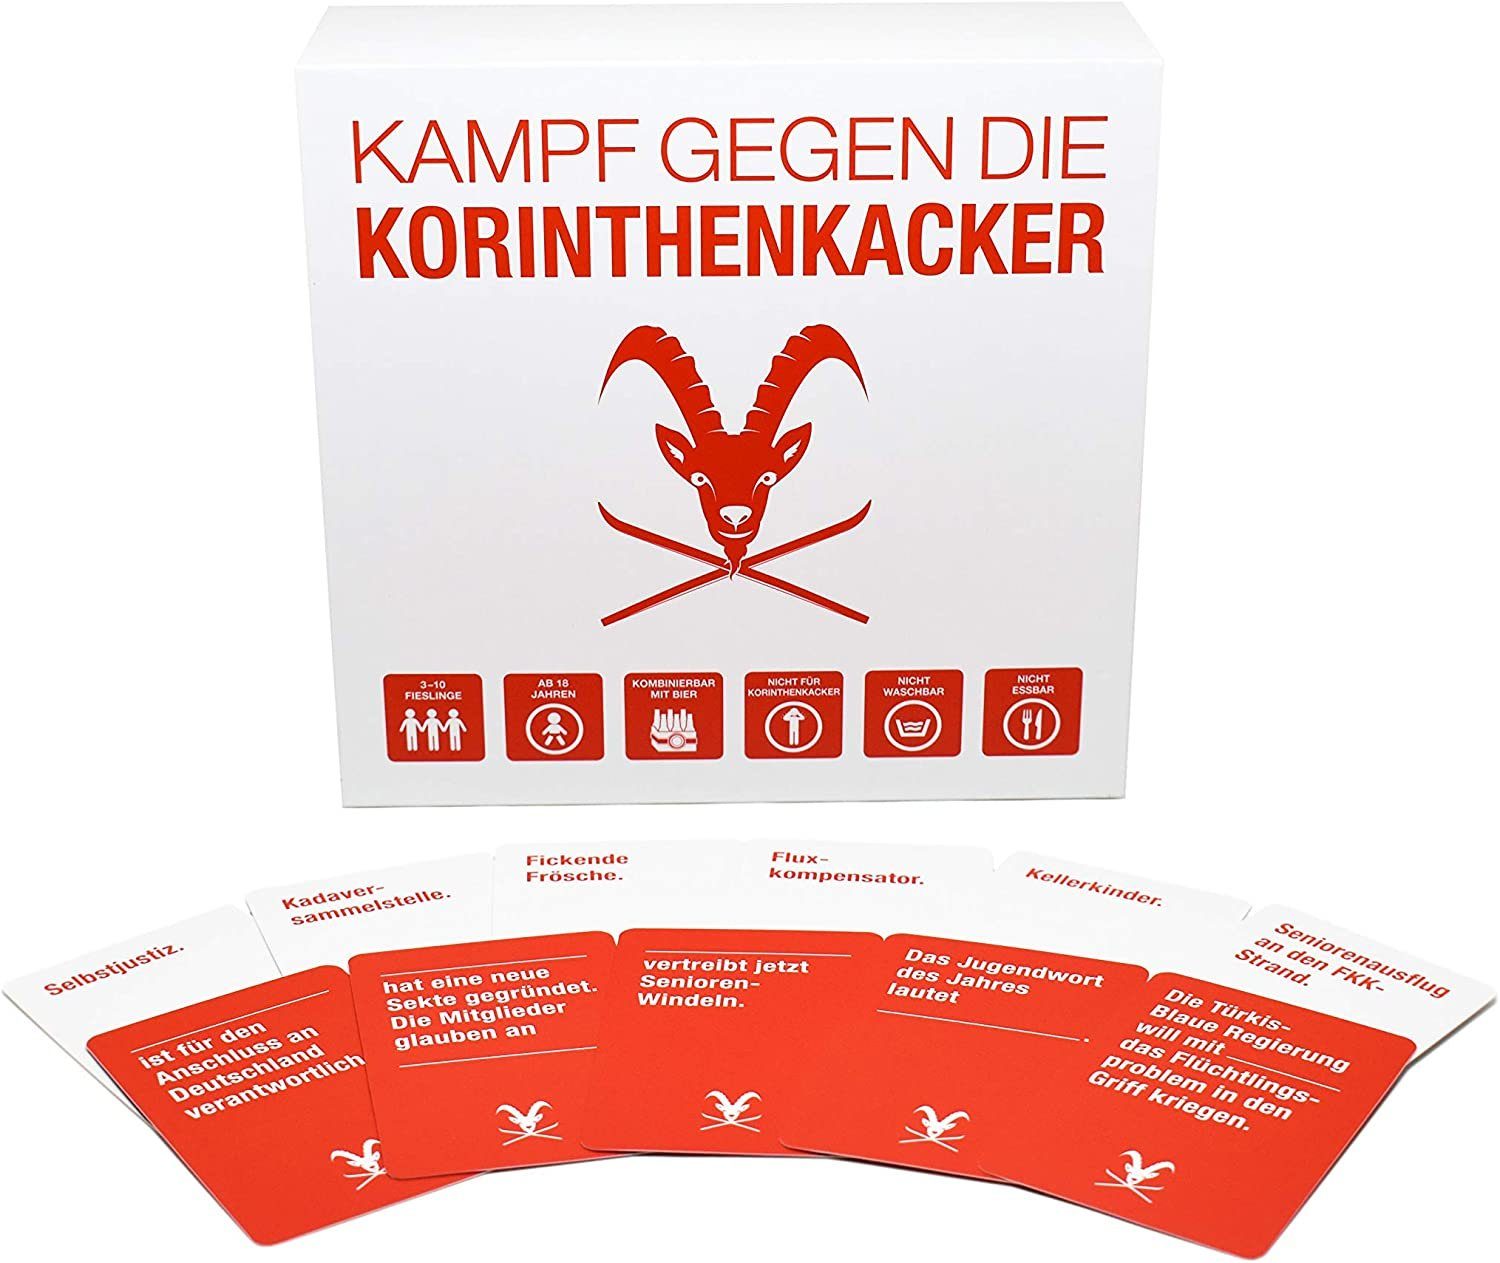 Kampfhummel Spiel, KAMPFHUMMEL Kampf gegen die Korinthenkacker – das fiese Kartenspiel für Österreich mit schwarzem Humor